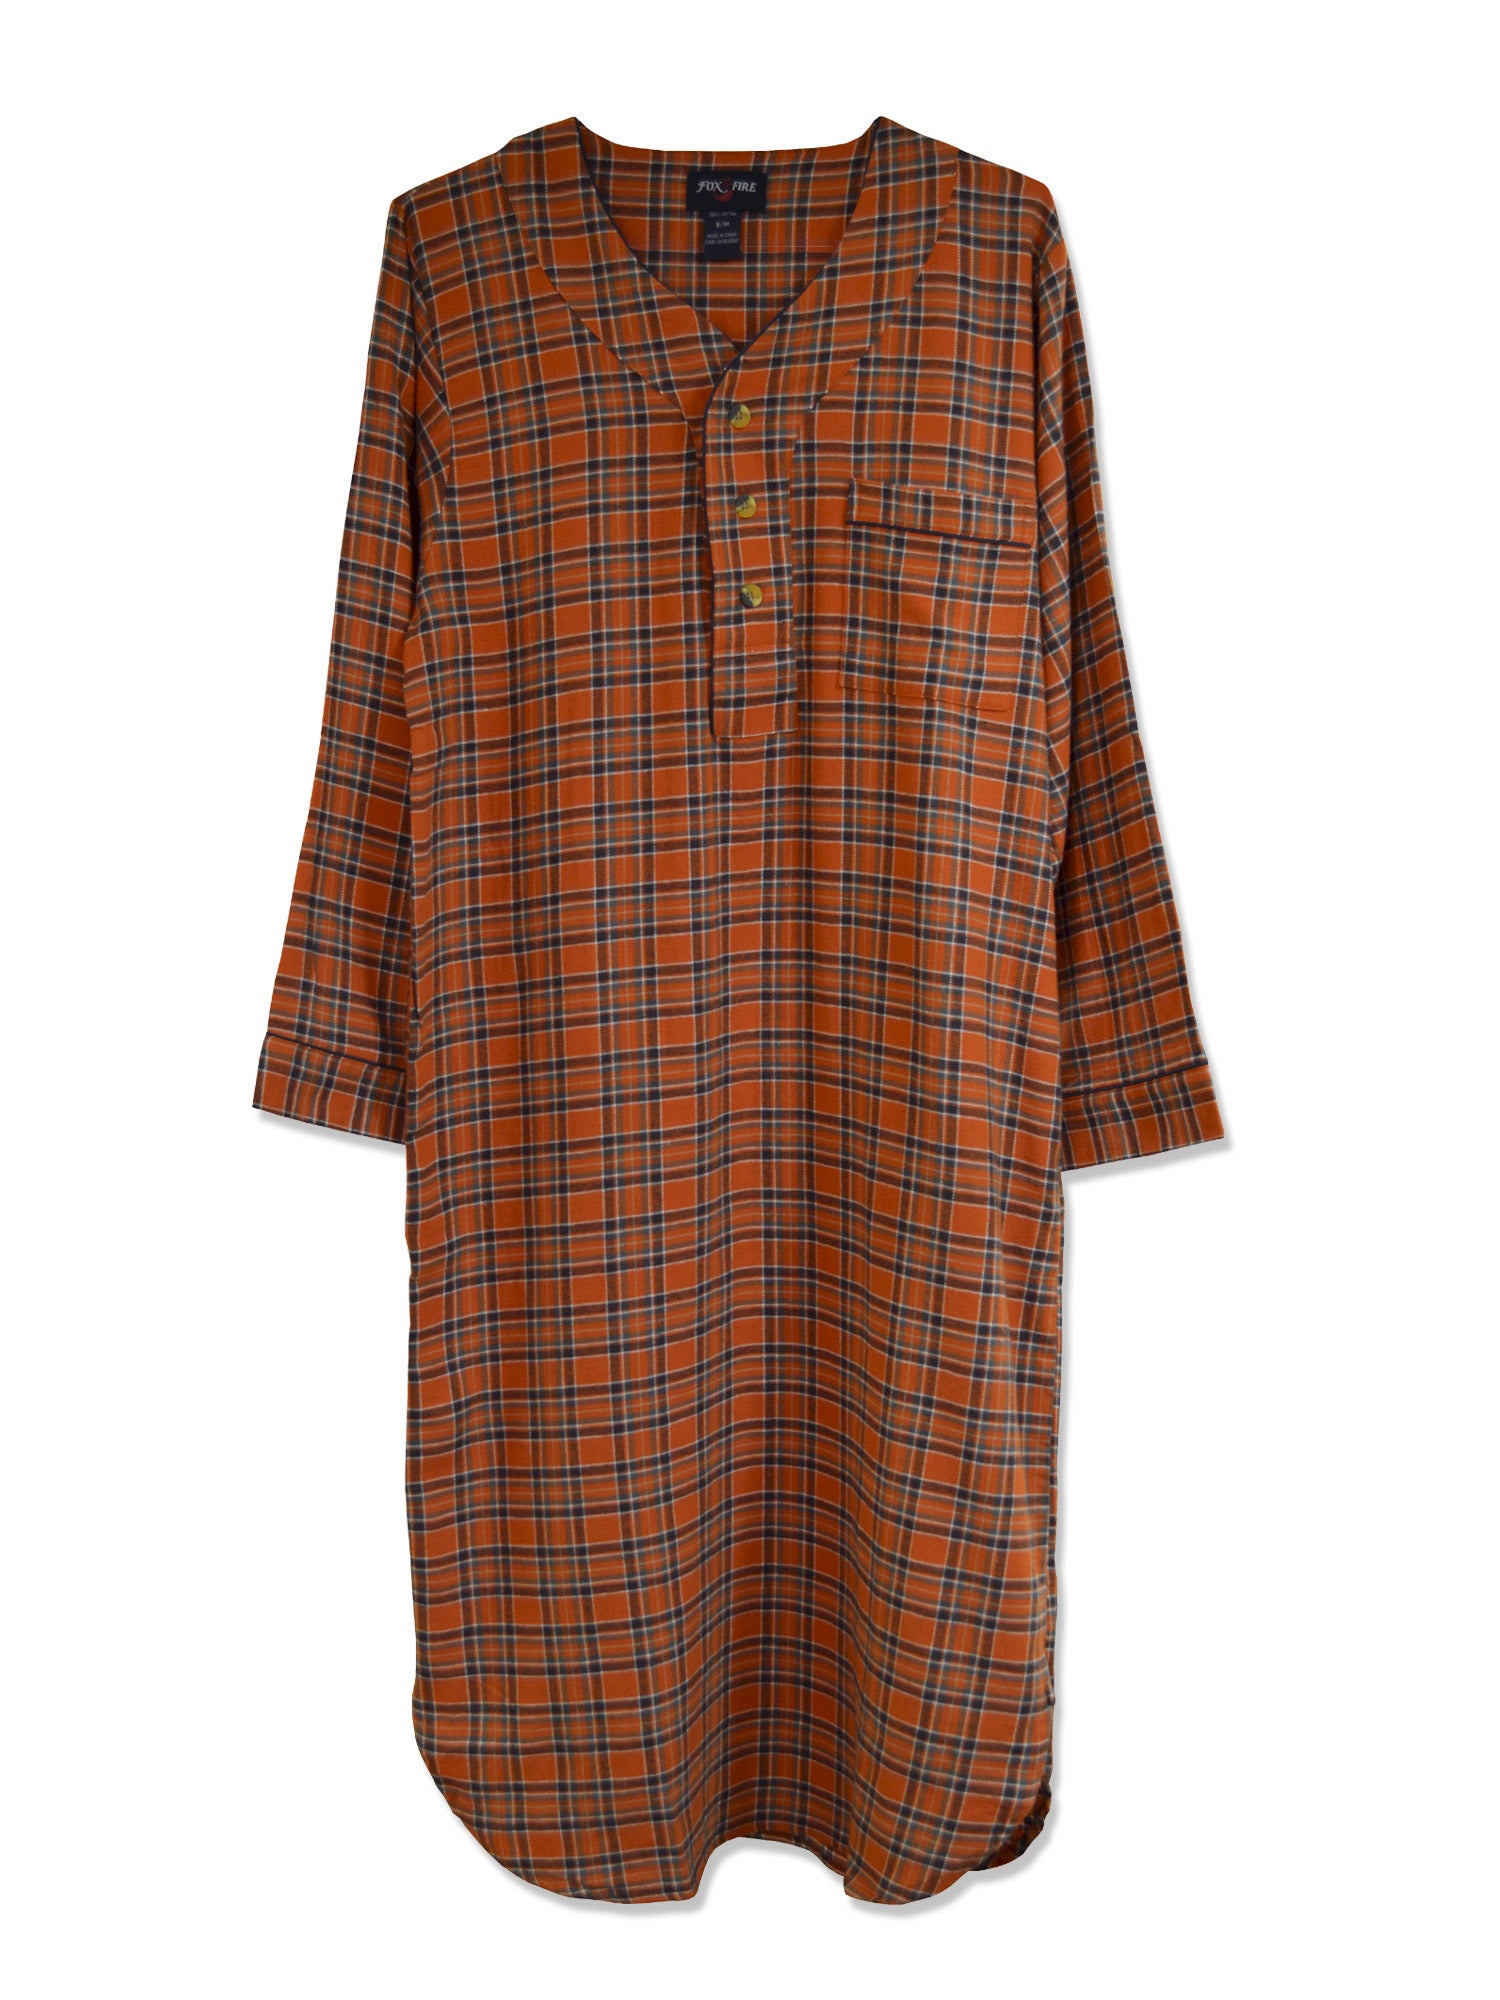 Foxfire 100% Cotton Flannel Men's Nightshirts - Regular Sizes